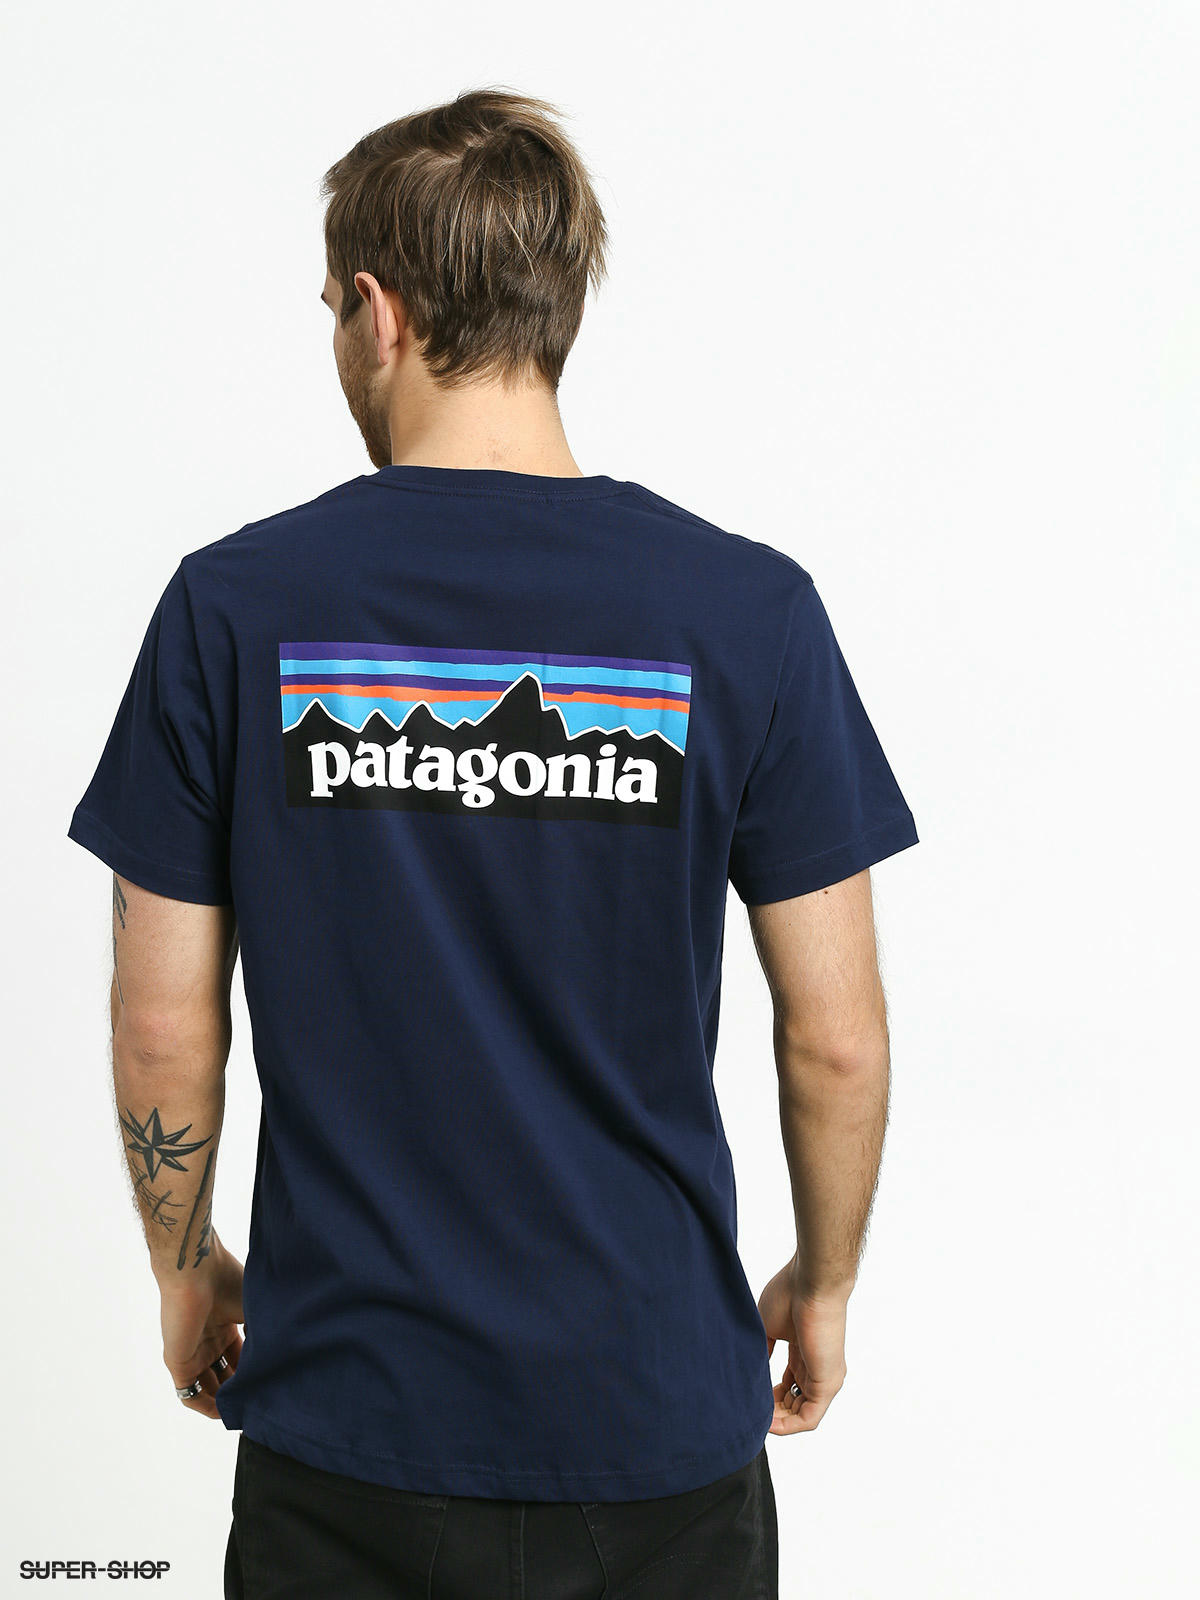 patagonia travel t shirt